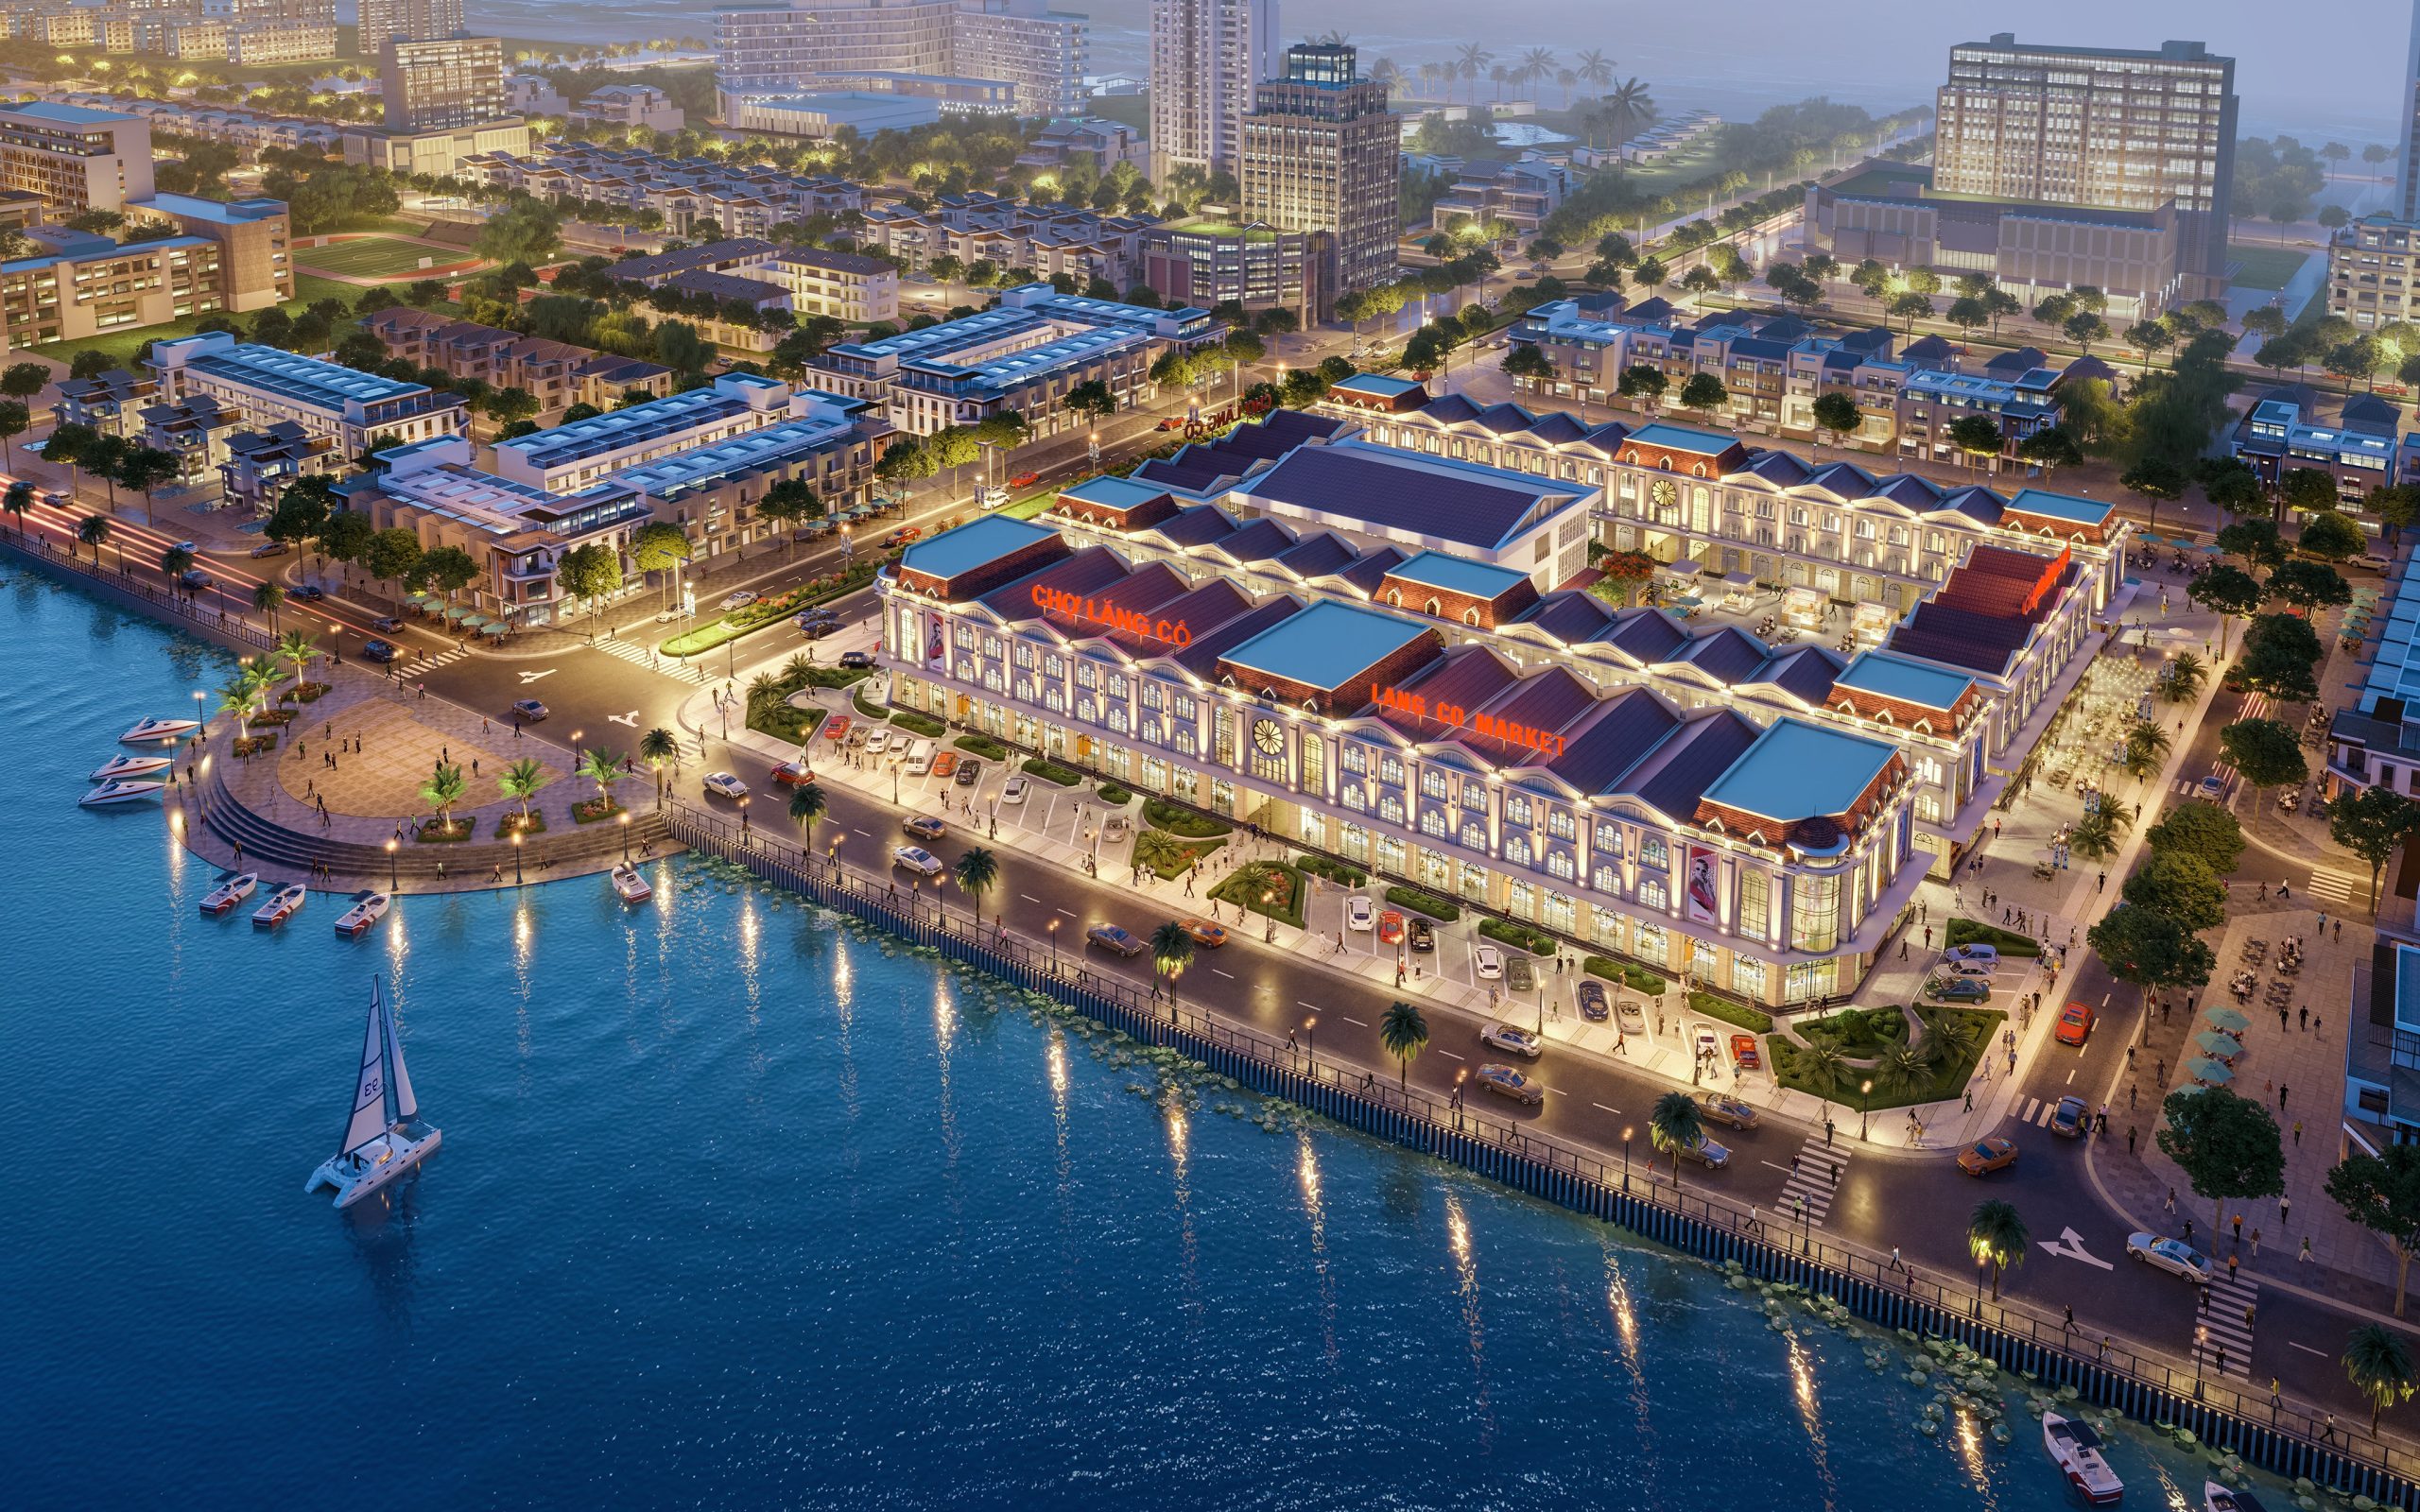 Ngoài dự kiến, Viet Nam Smart City thu hút gần 80 giao dịch tại lễ giới thiệu dự án chợ Lăng Cô - Viet Nam Smart City